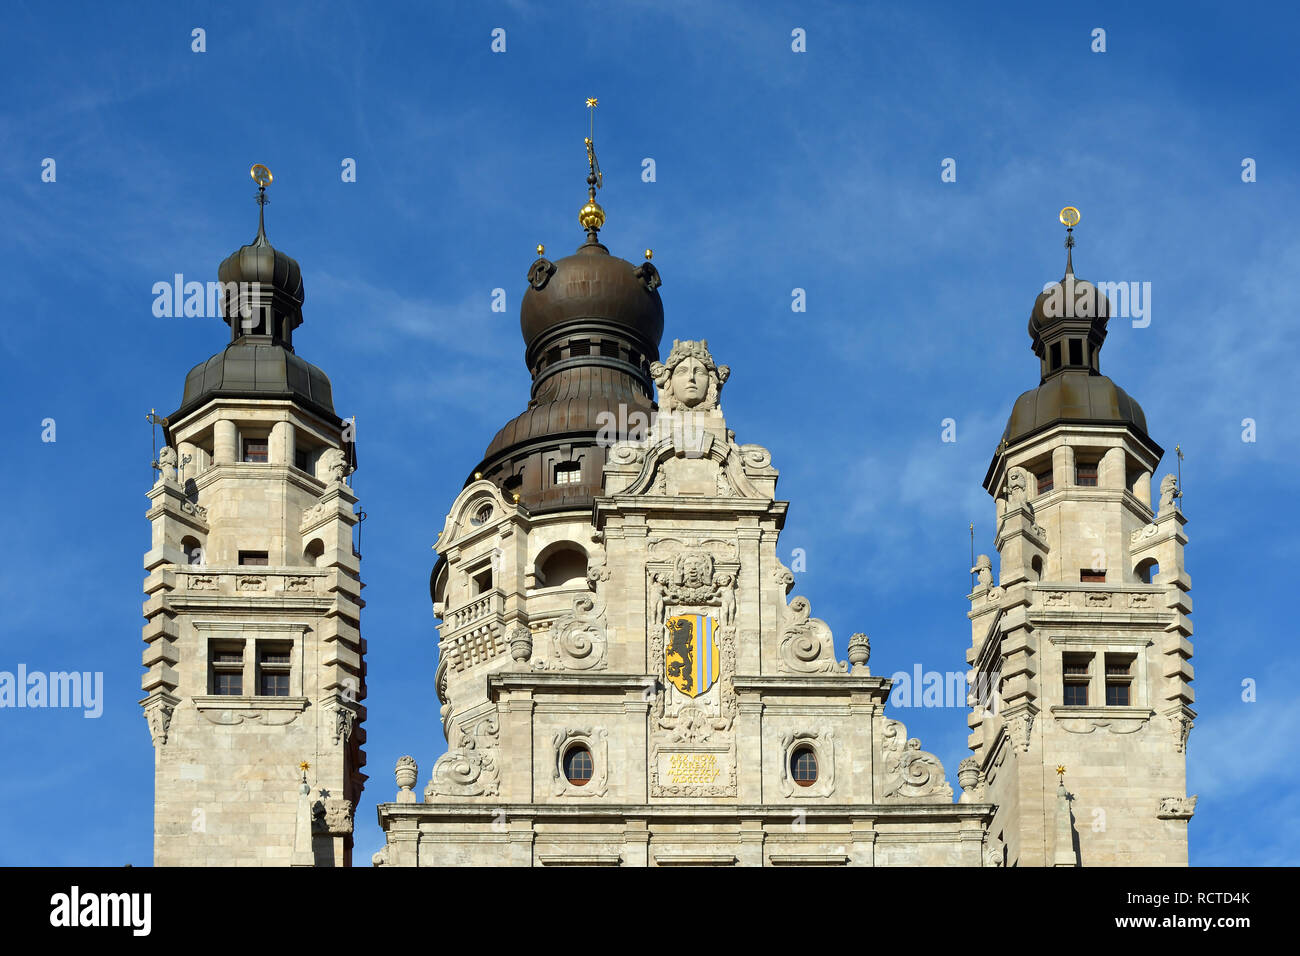 La parte superiore della torre del Nuovo Municipio di Lipsia con lo stemma della metropoli sassone - Germania. Foto Stock